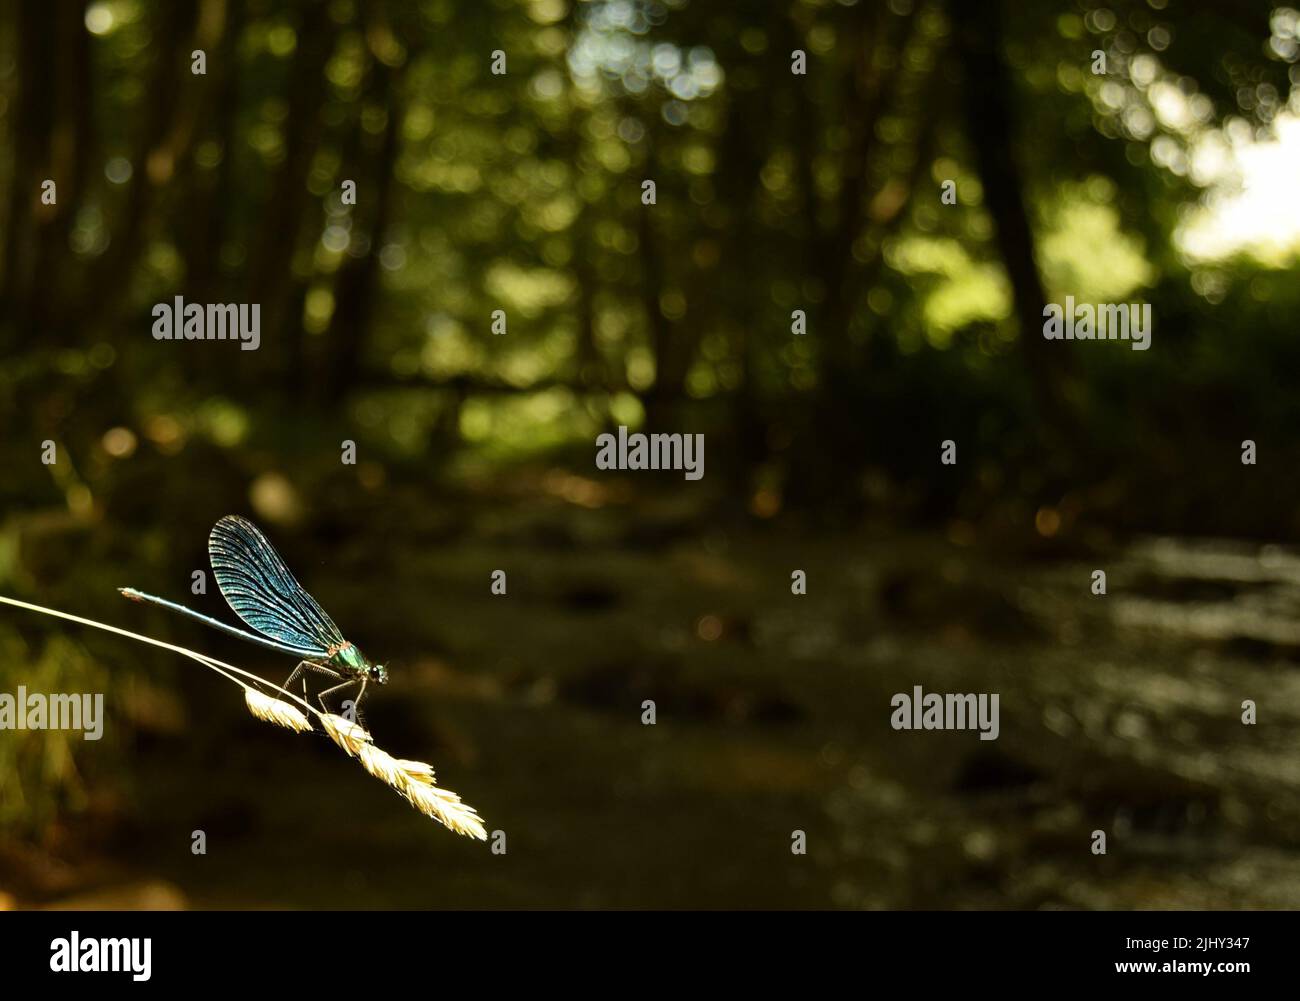 Primo piano di una libellula blu dai colori vivaci, su un fusto secco di erba con semi di fronte ad uno sfondo bokeh di verde, alberi, un ruscello che scorre Foto Stock